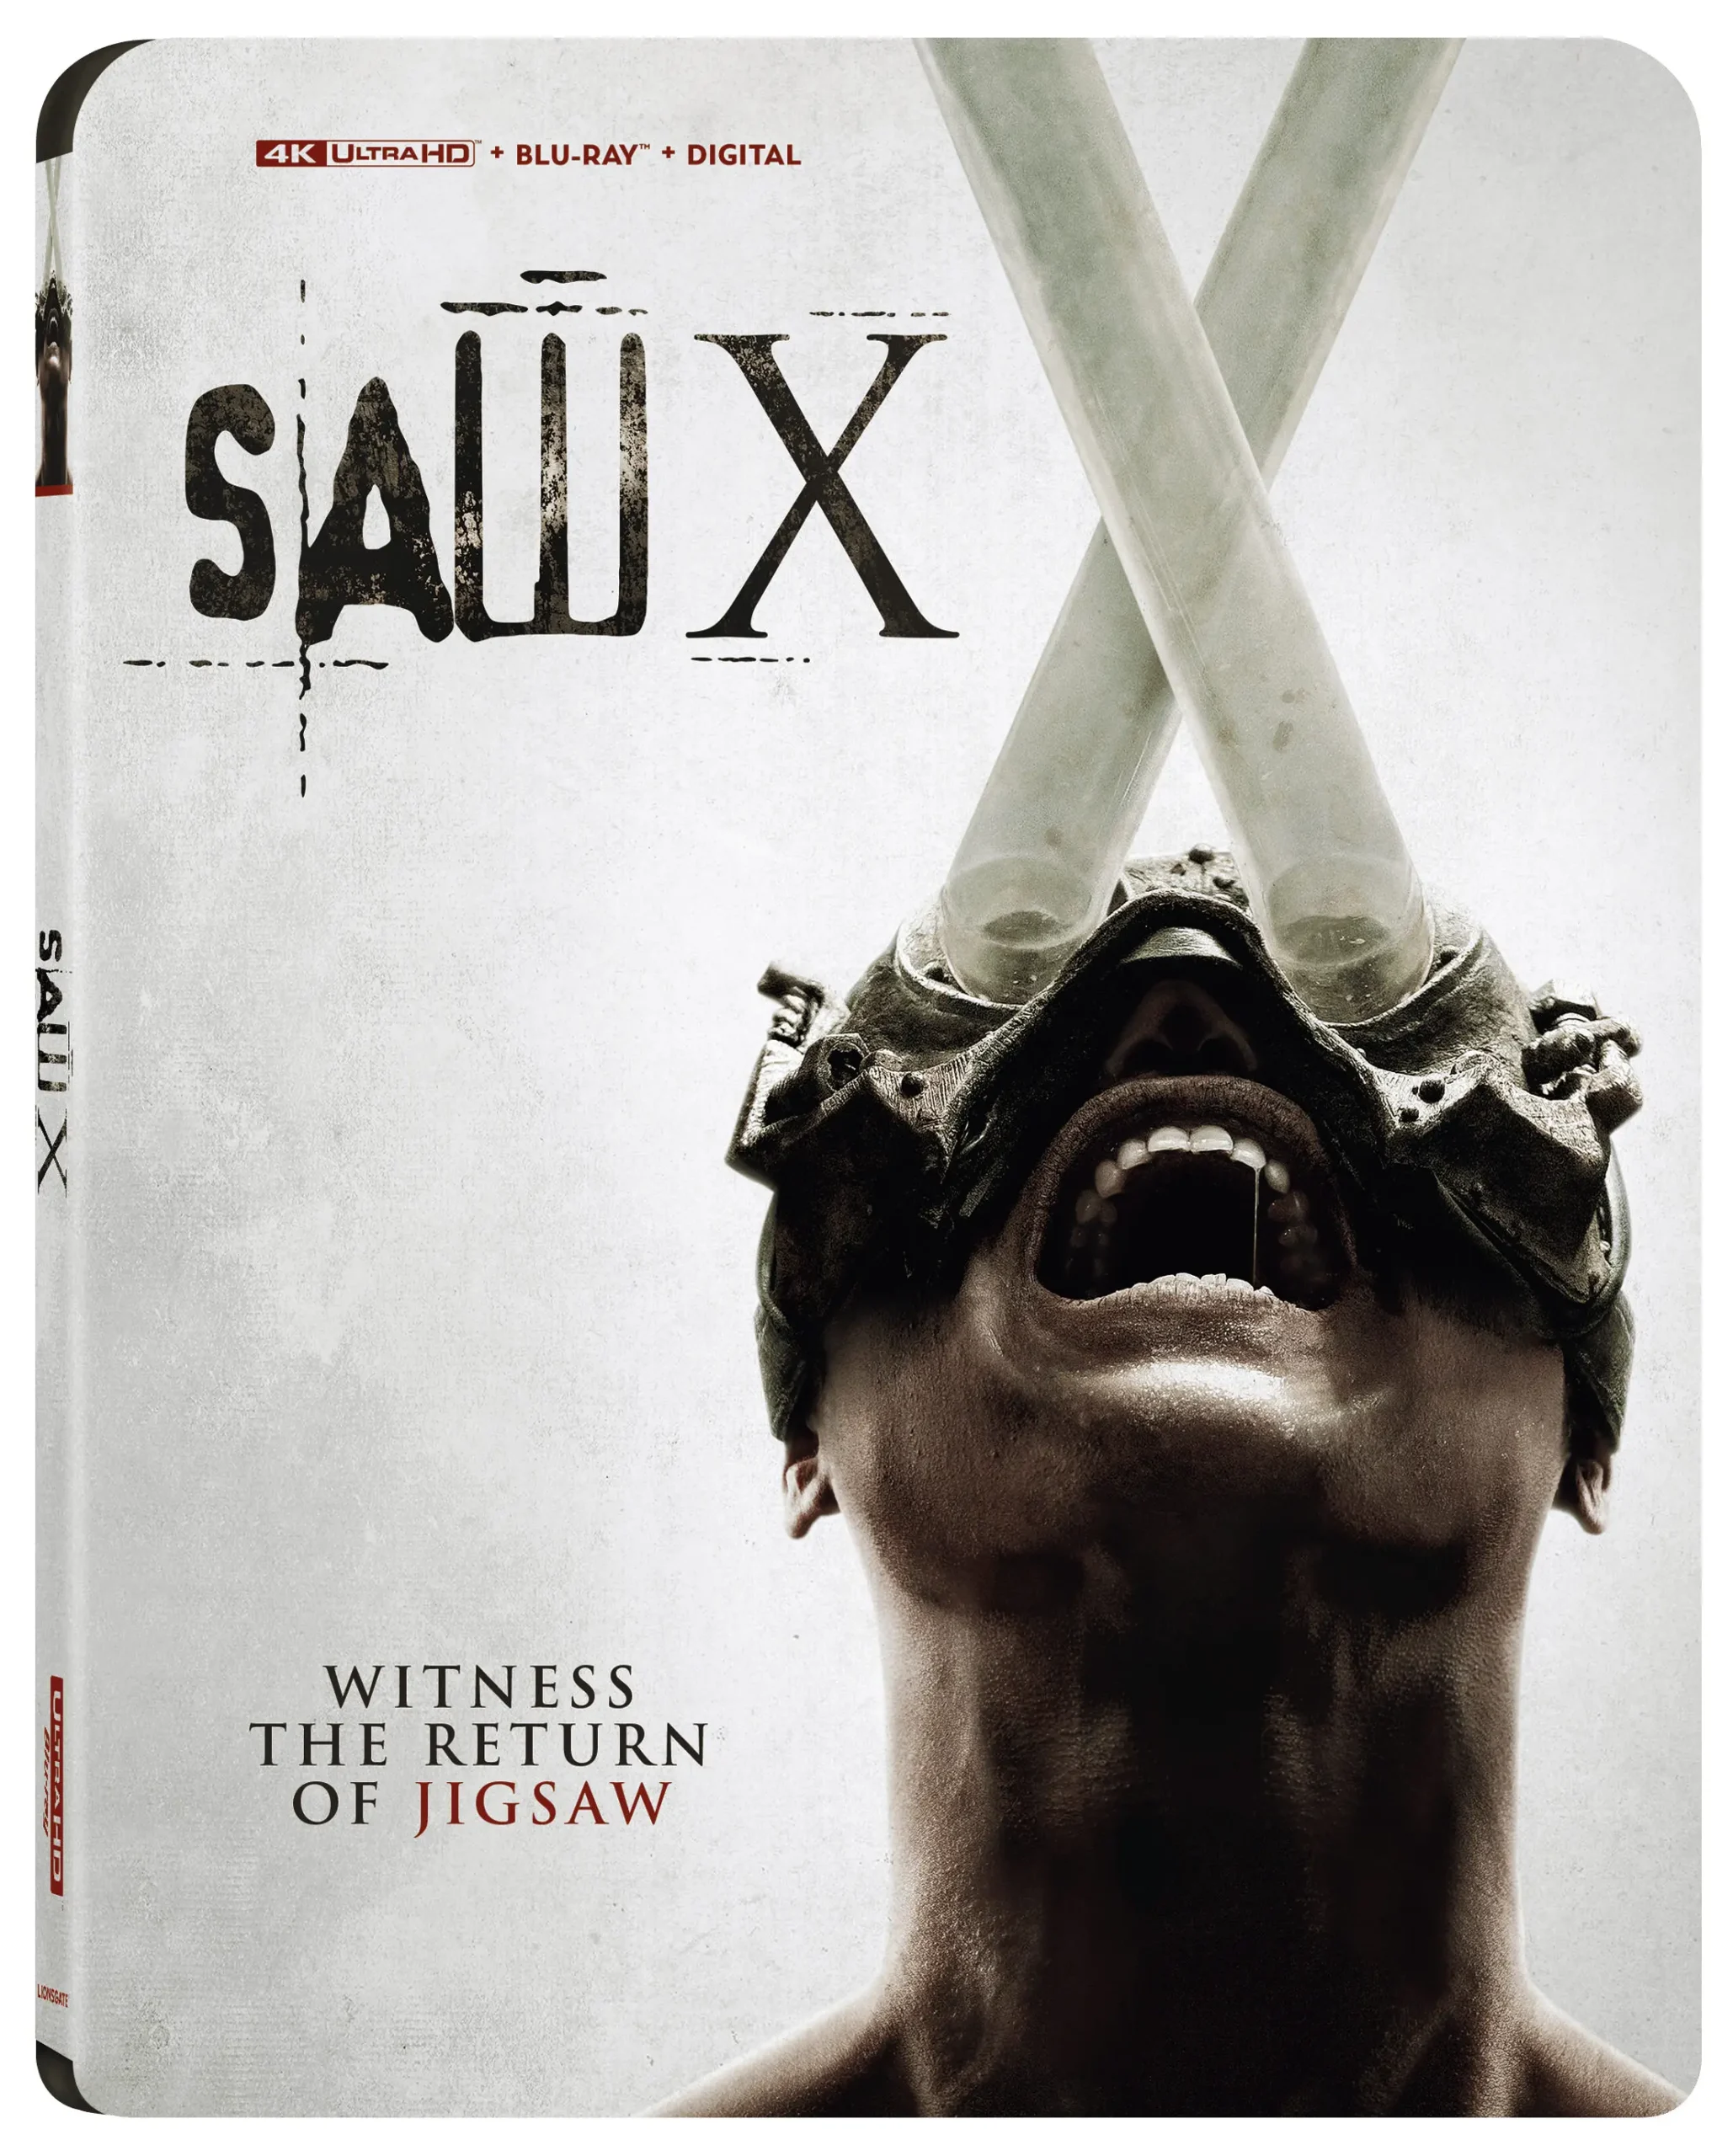 تصویر روی جلد نسخه بلوری فیلم Saw X